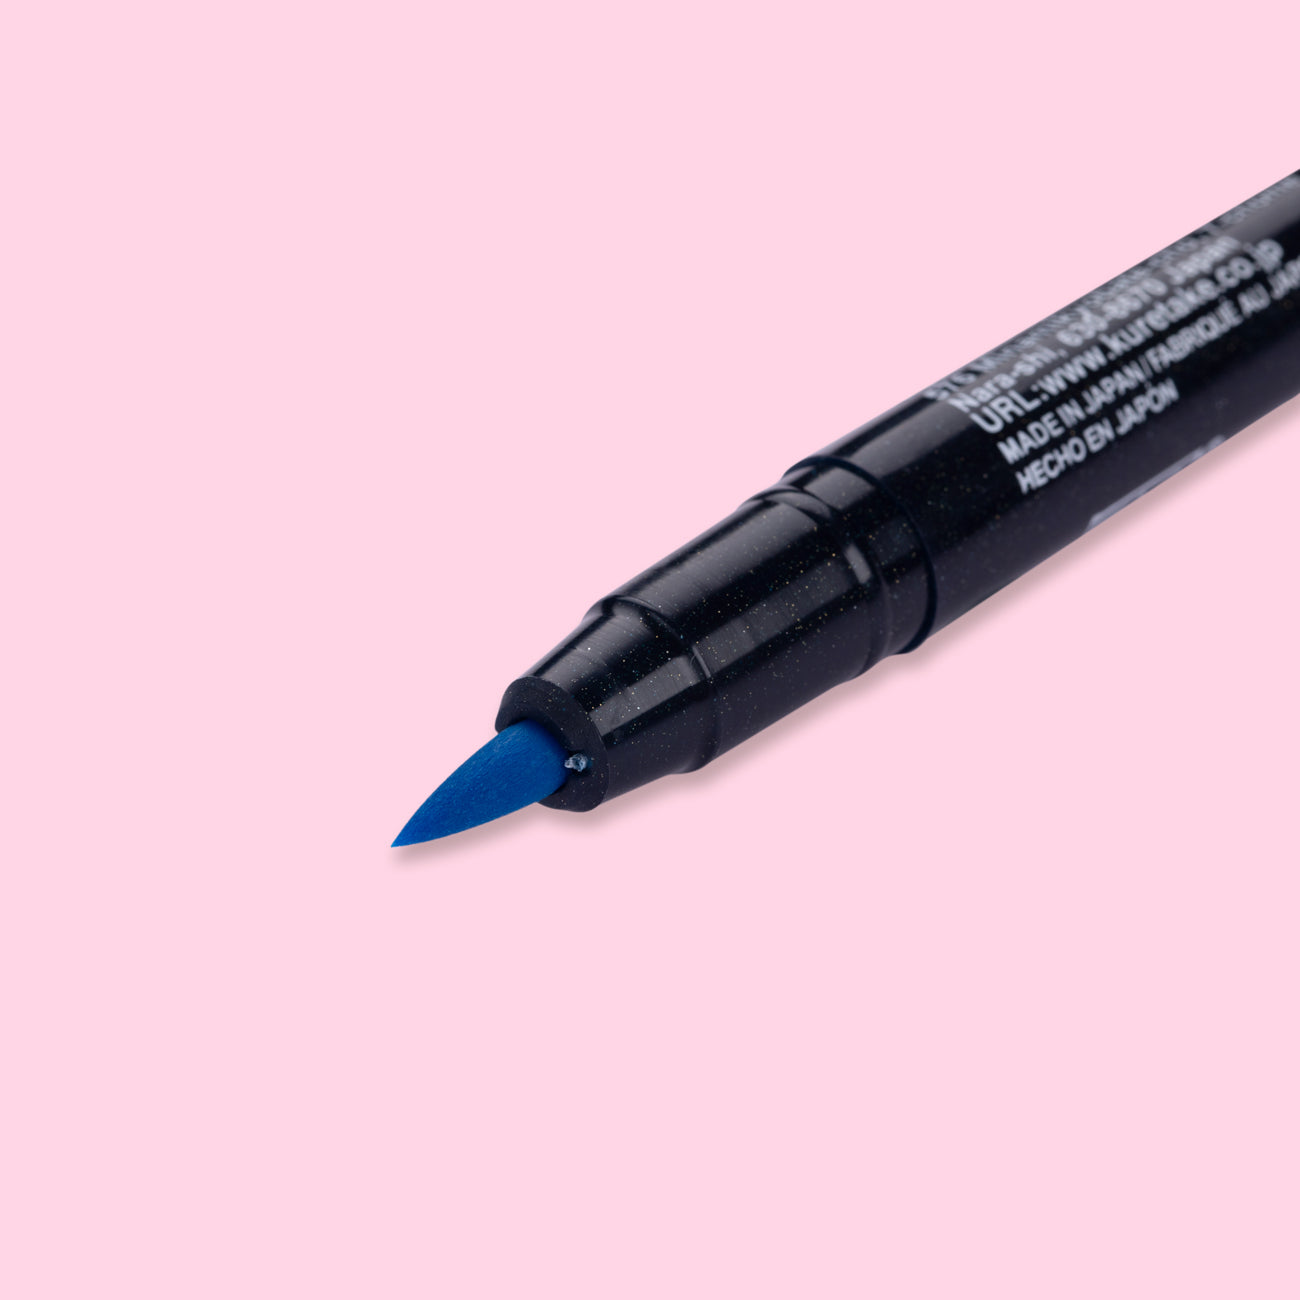 Kuretake  Buy Kuretake Brush Pens & More Online in Australia